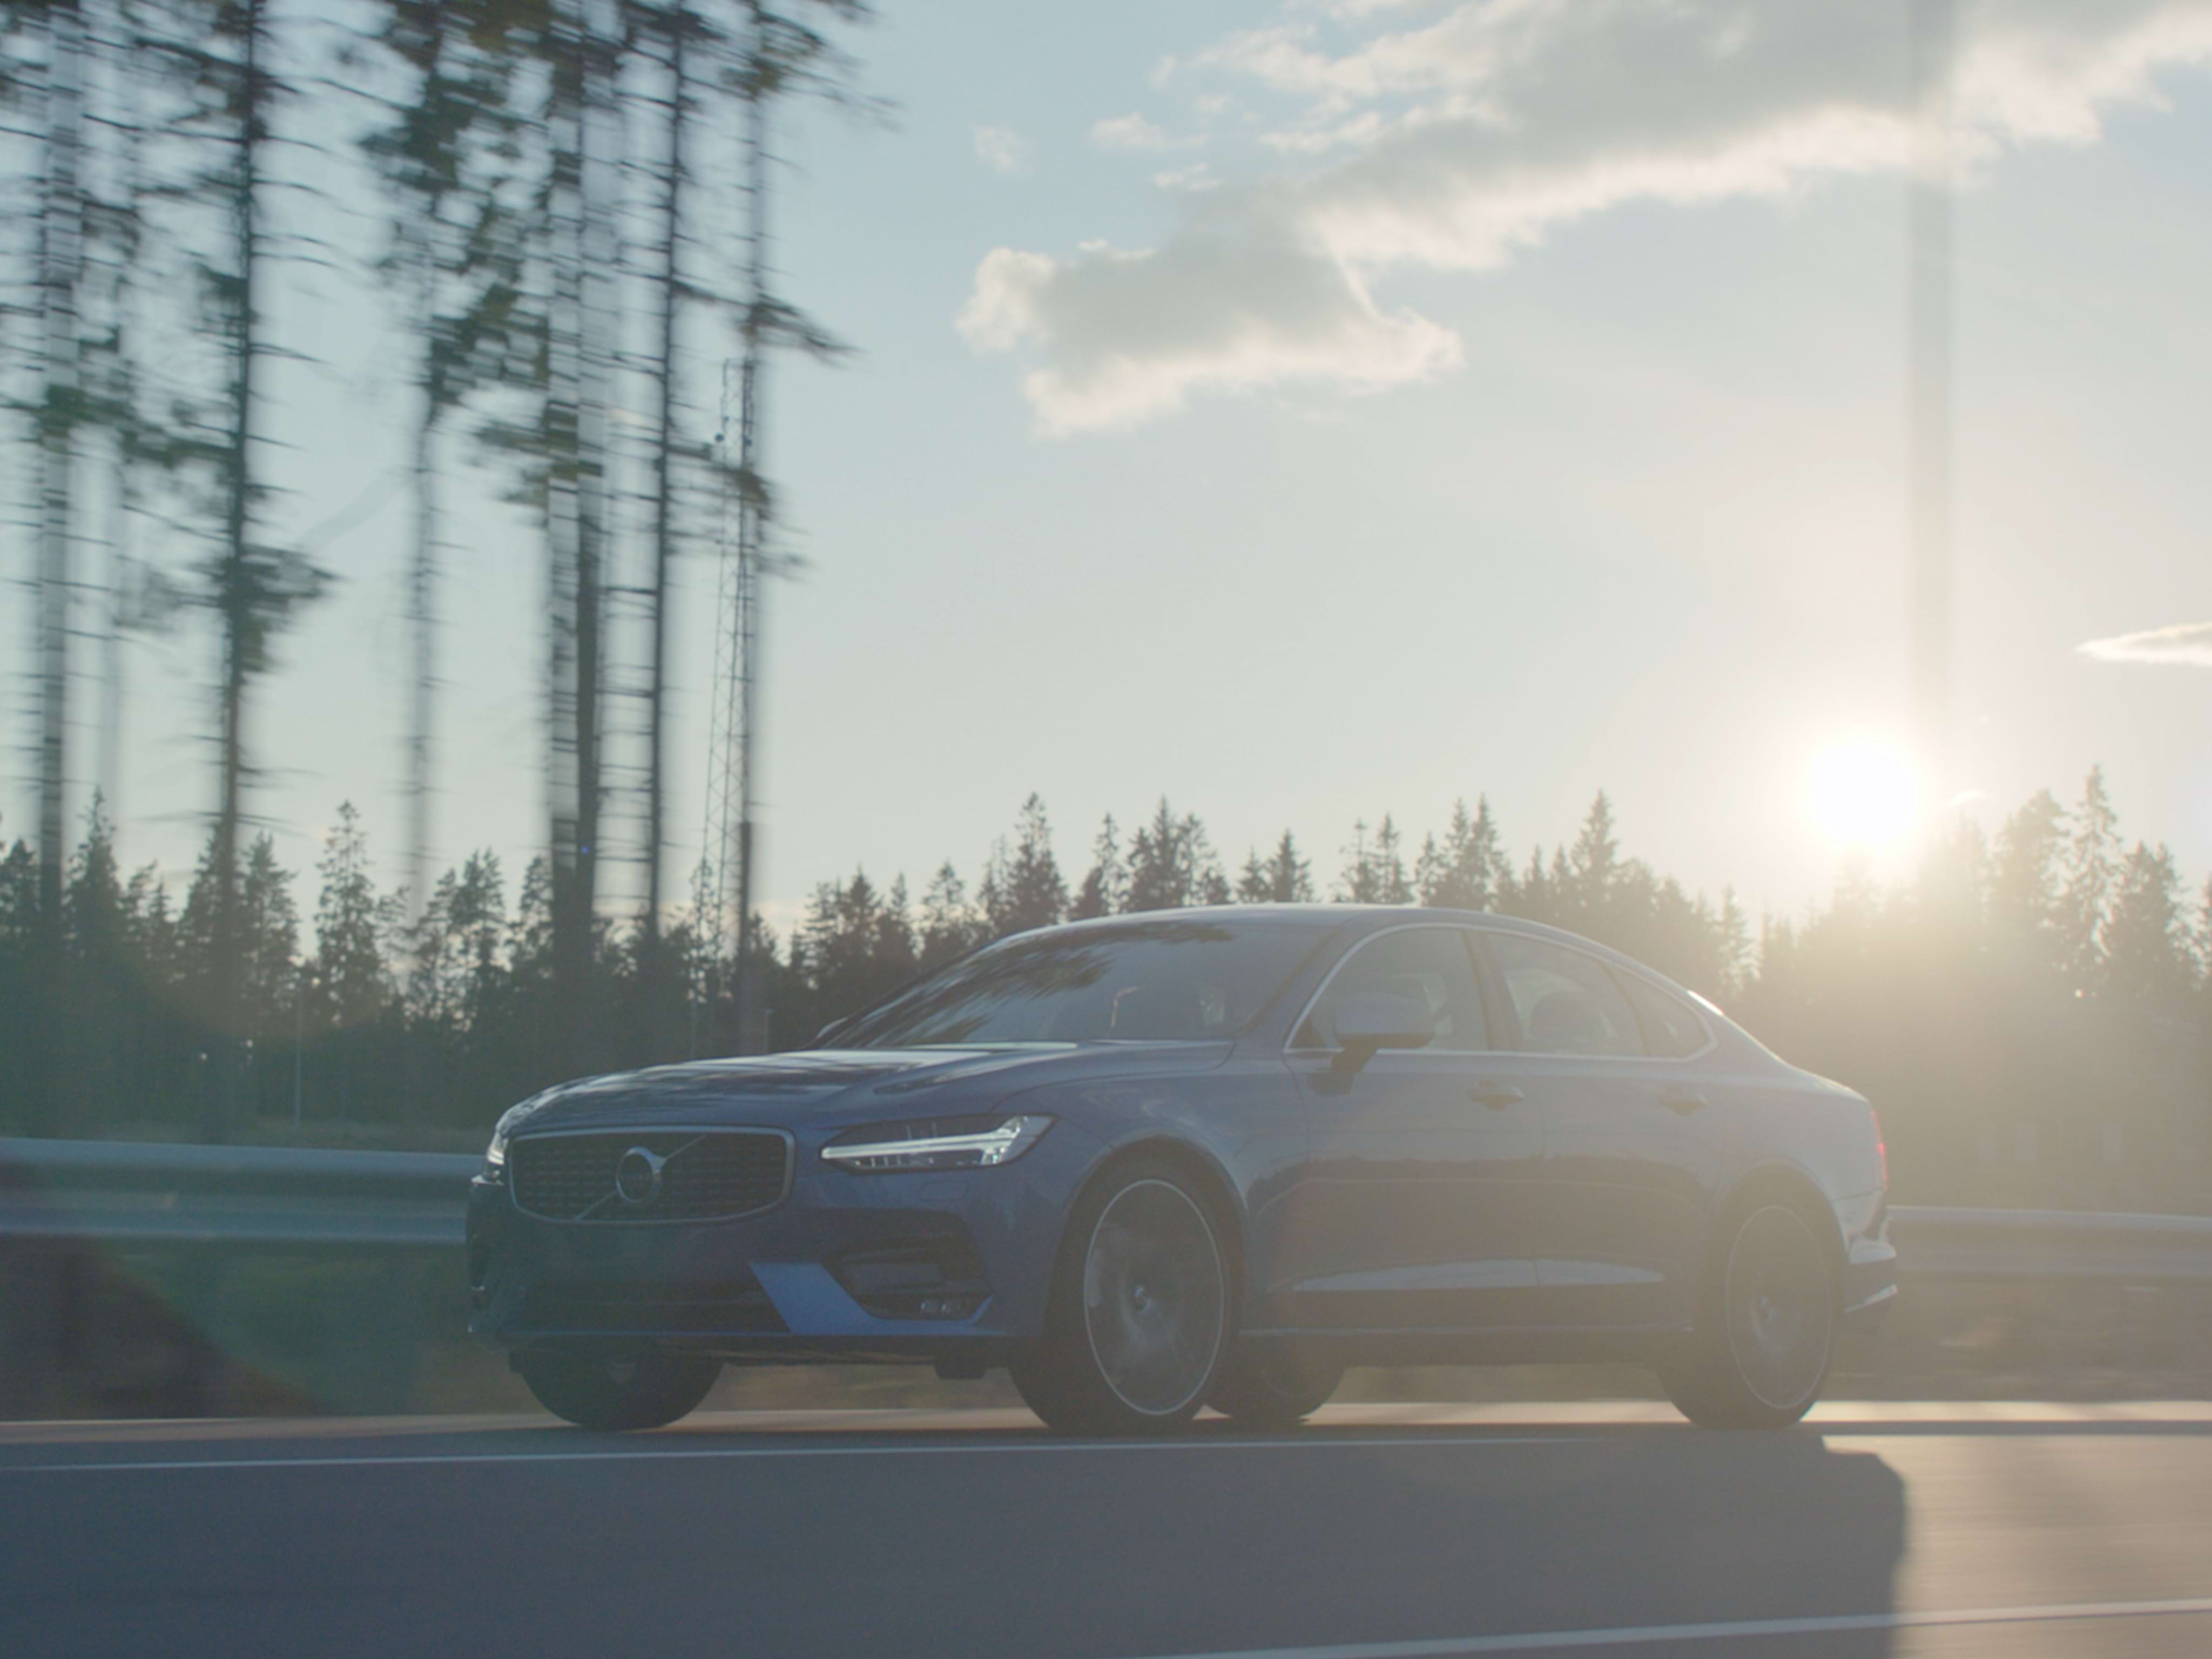 Ευρυγώνια λήψη ενός αυτοκινήτου Volvo S90 Denim Blue που κινείται κατά μήκος ενός δασικού δρόμου μια ηλιόλουστη μέρα.